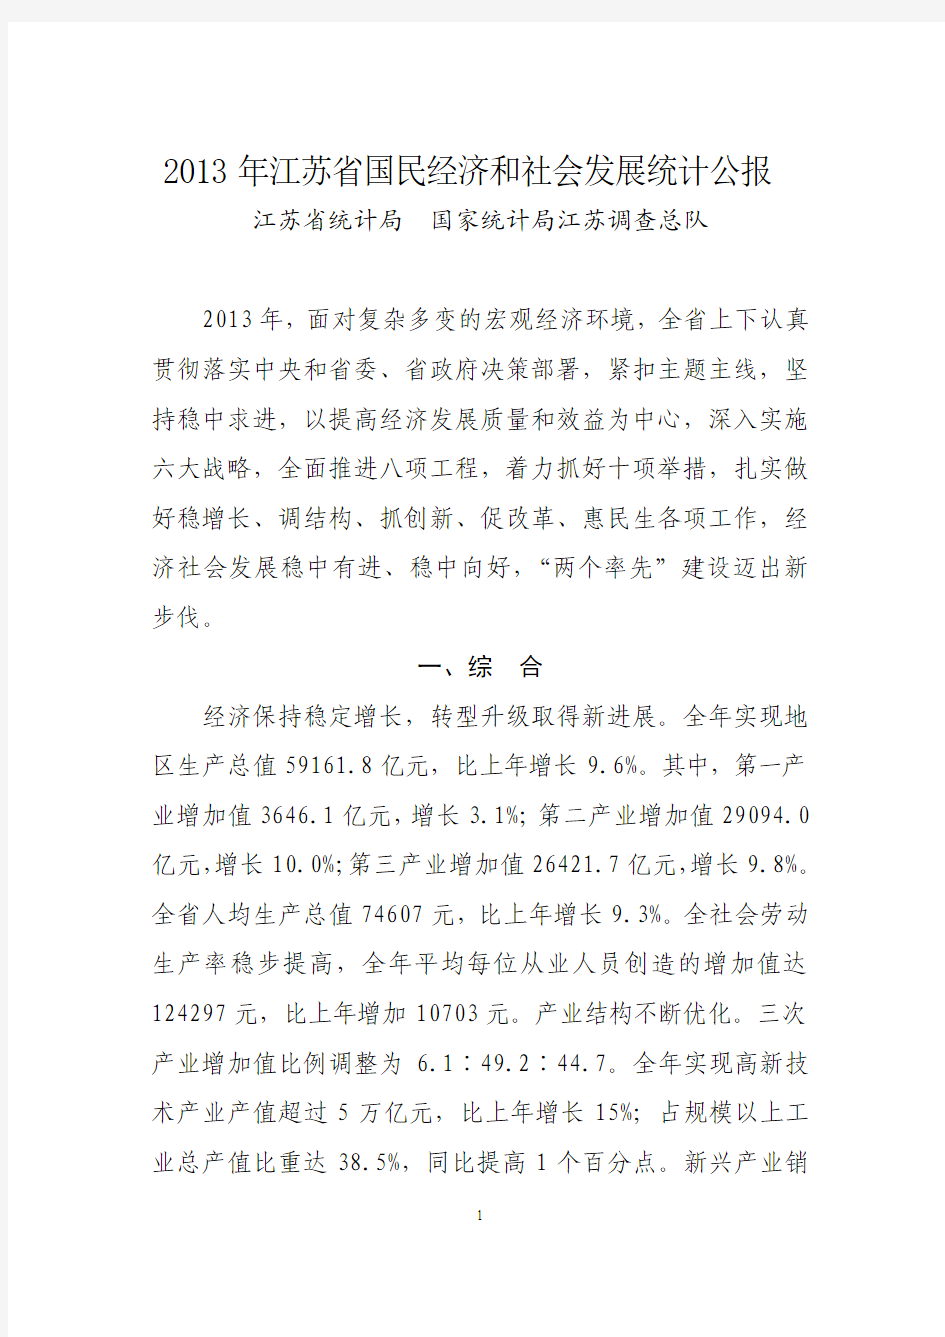 江苏省2013年统计公报